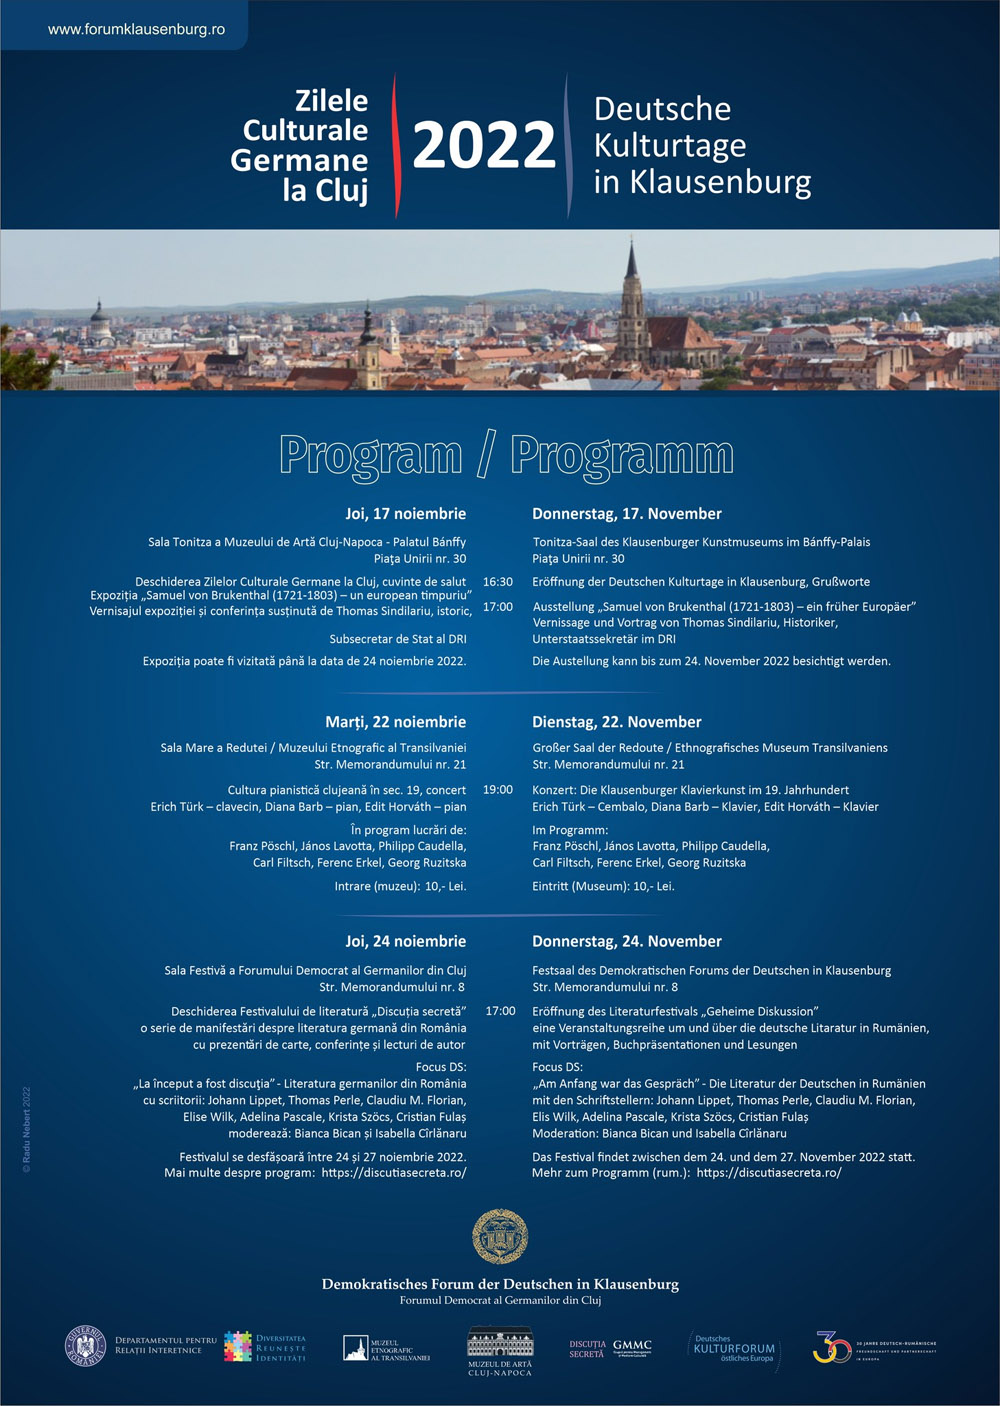 Plakat: Das Programm der Deutschen Kulturtage in Klausenburg/Cluj 2022